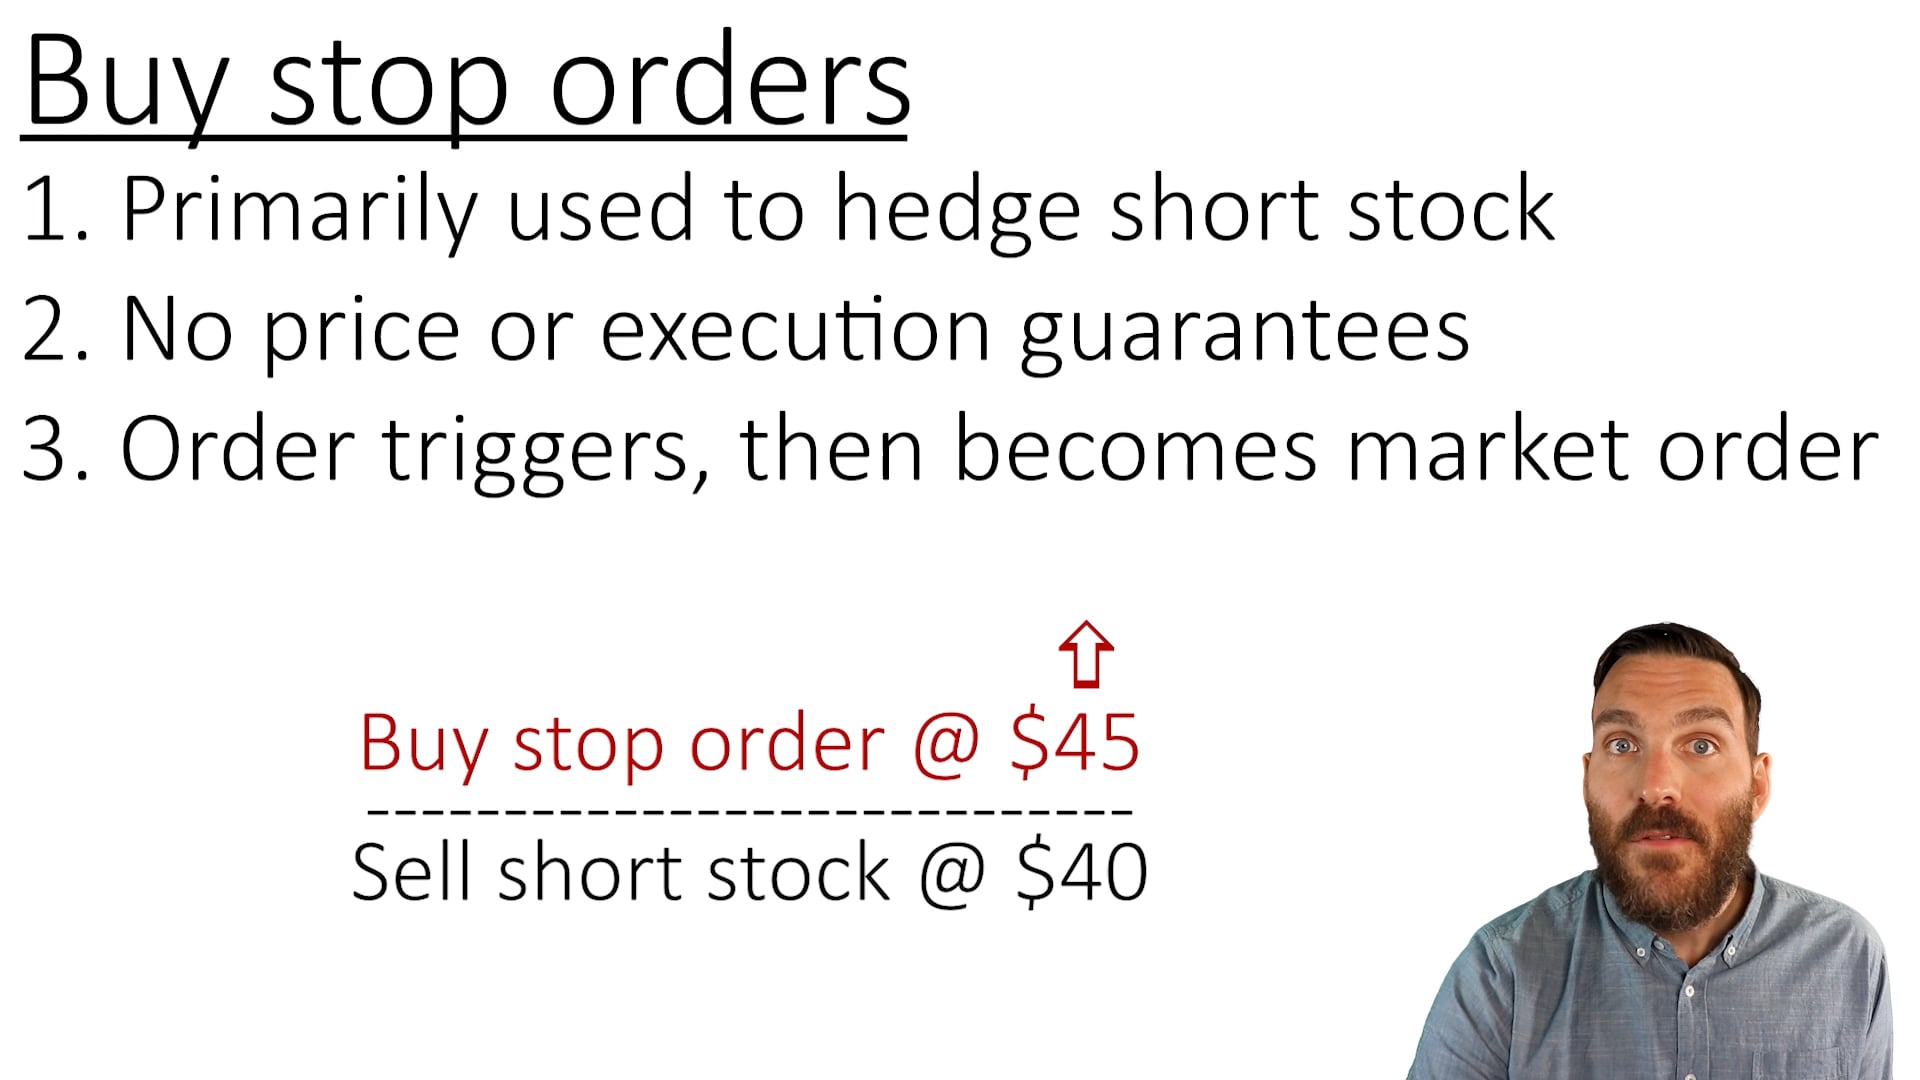 Buy stop orders